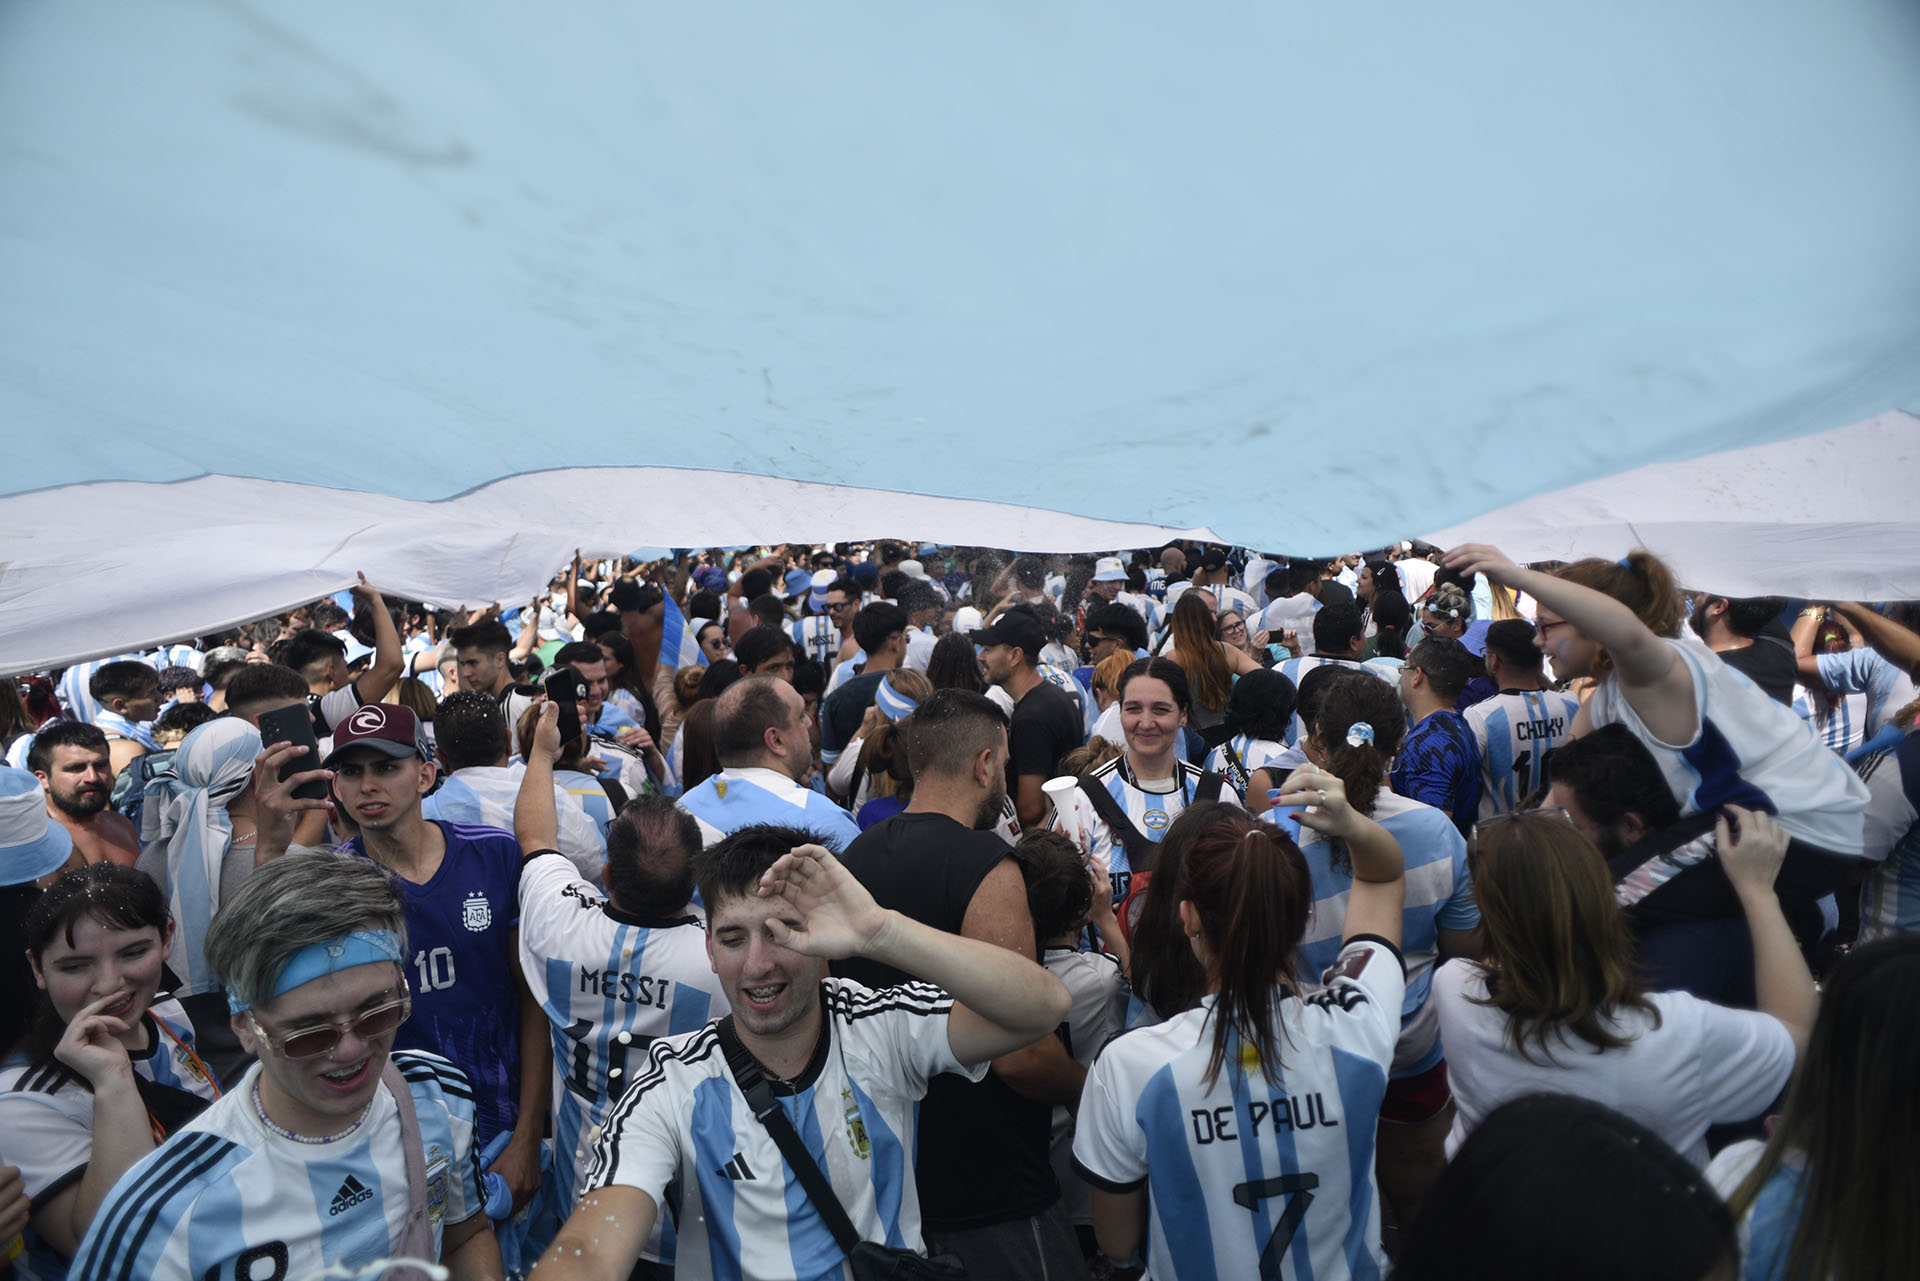 Un poco de sombra bajo la bandera argentina para sostener la fiesta a pesar del intenso calor de la tarde 